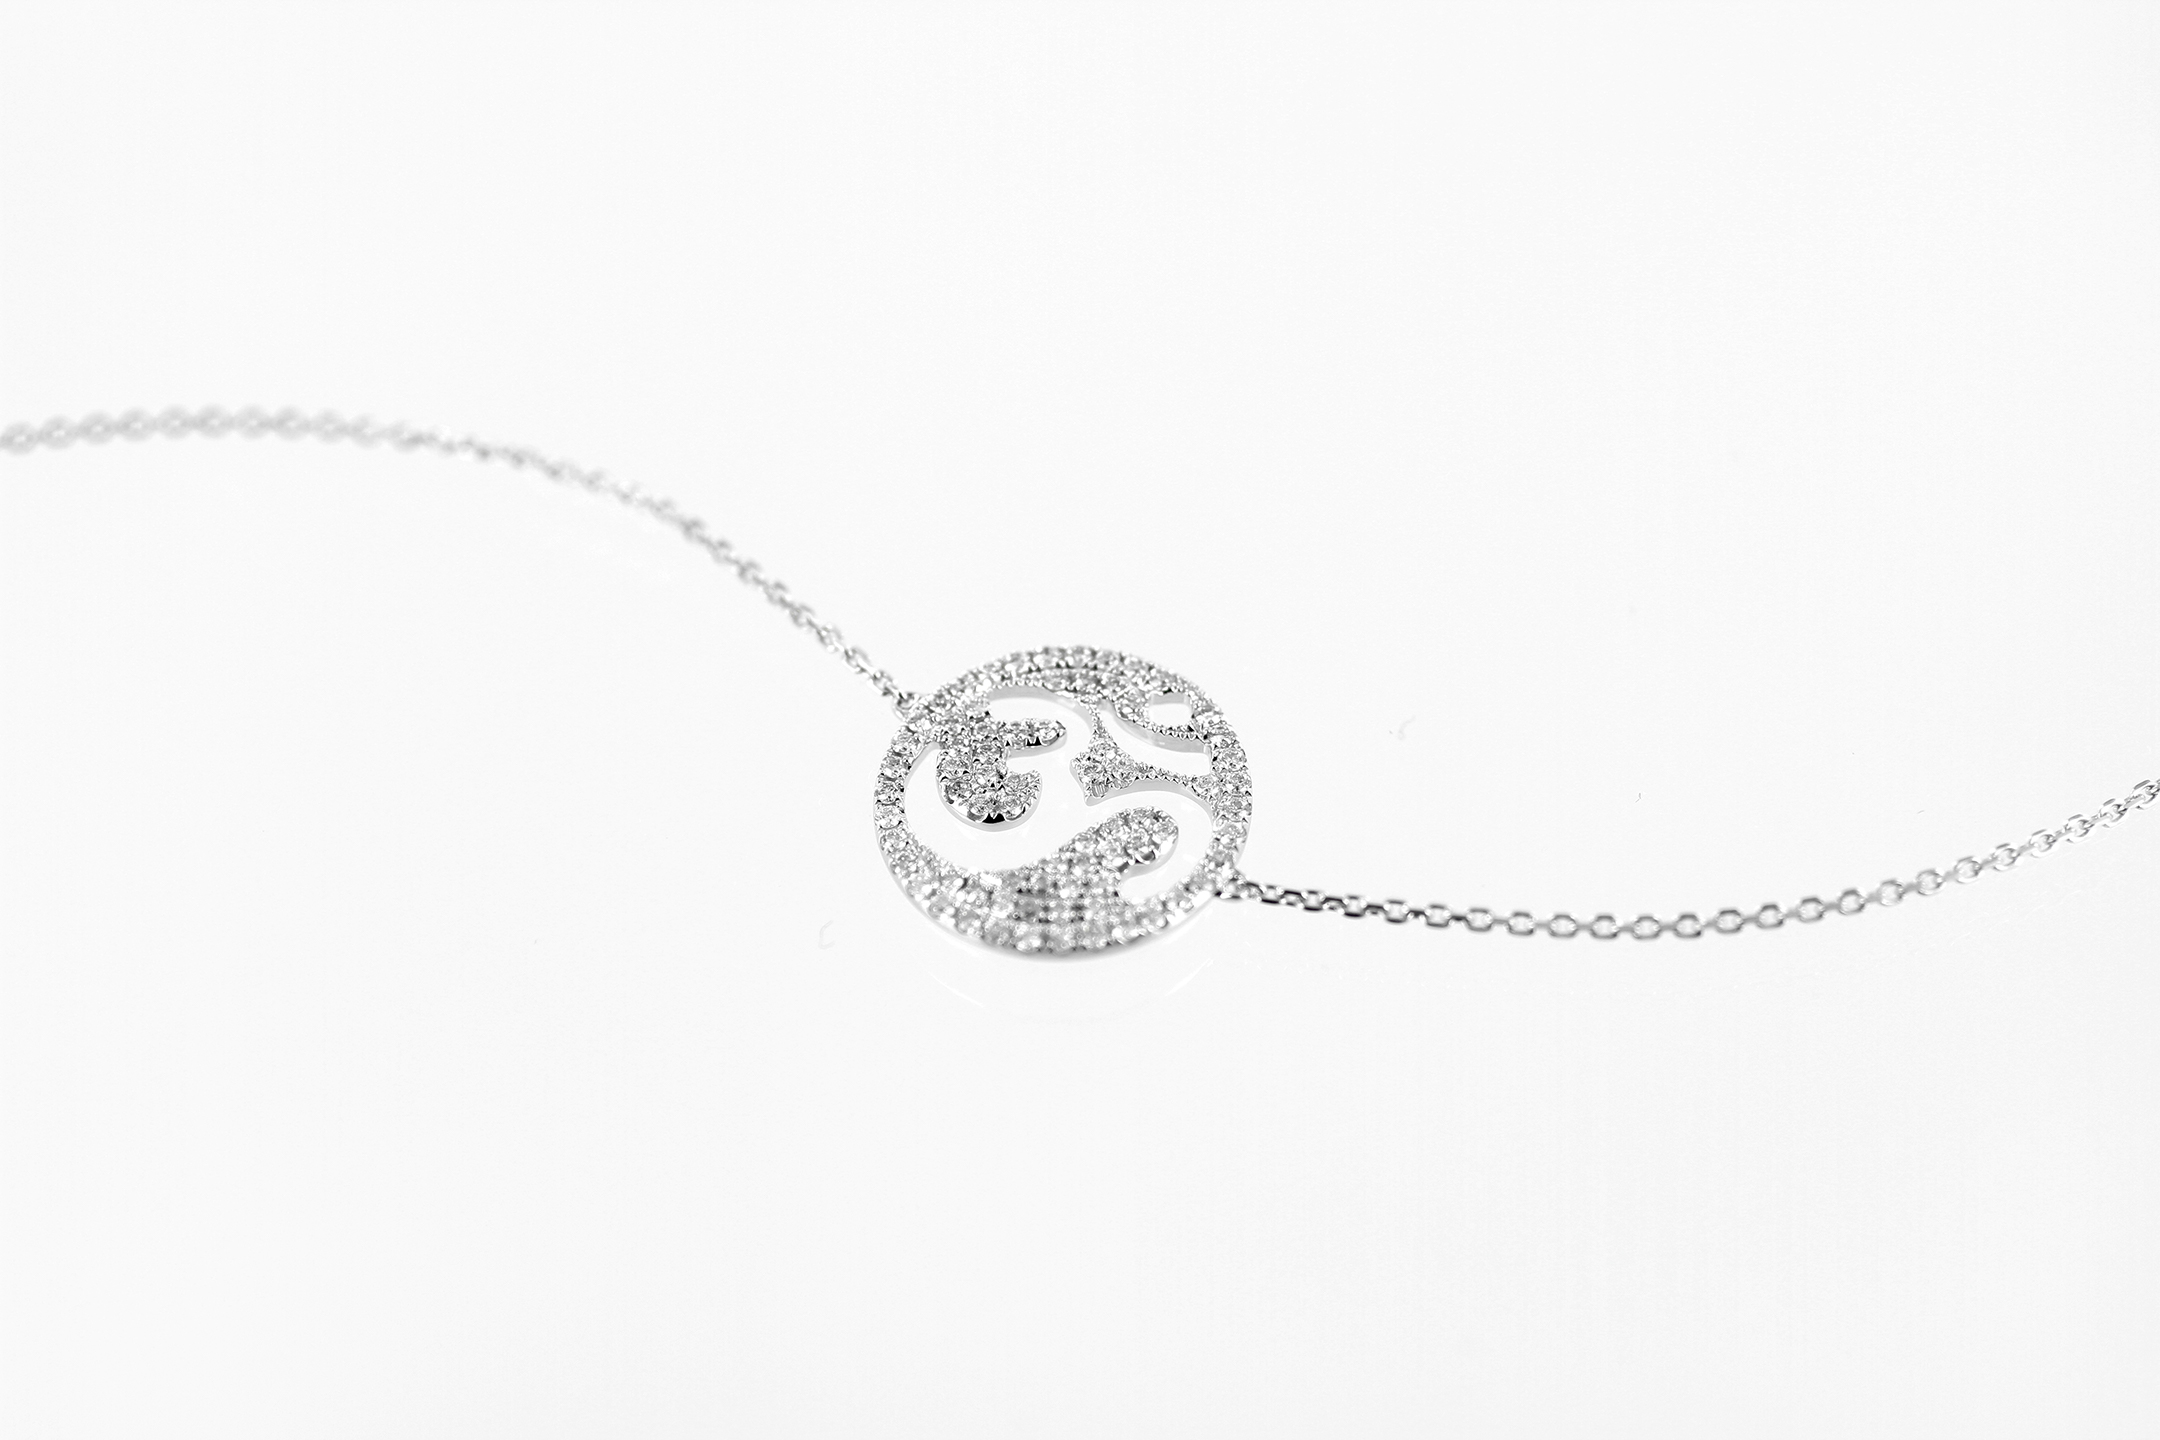 Photographie packshot sur fond blanc du collier OM en or blanc et diamants : il est composé du symbole OM incrusté de diamants, monté sur une chaîne en or blanc très fine.